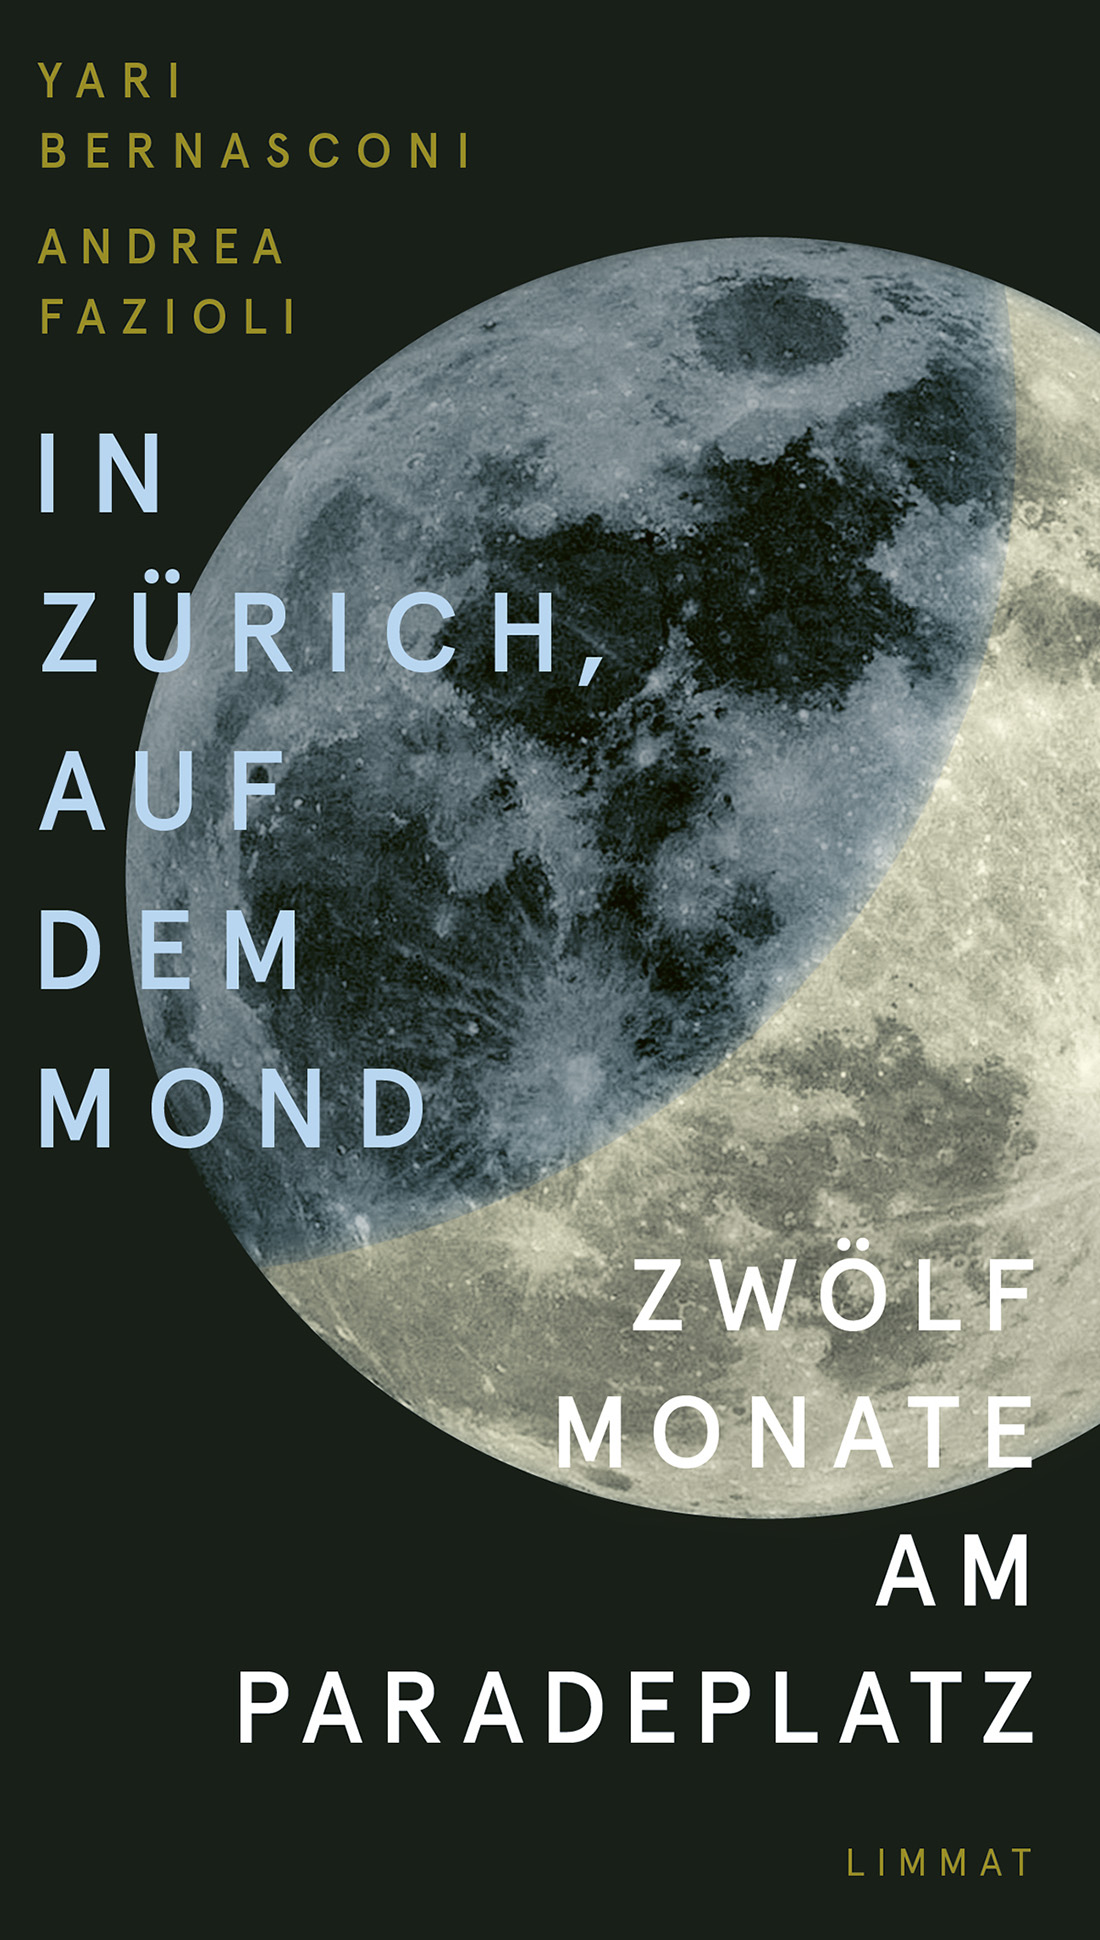 ‘In Zürich, auf dem Mond – zwölf Monate am Paradeplatz’ [‘In Zurich, on the moon – 12 months on Paradeplatz’] by Yari Bernasconi and Andrea Fazioli